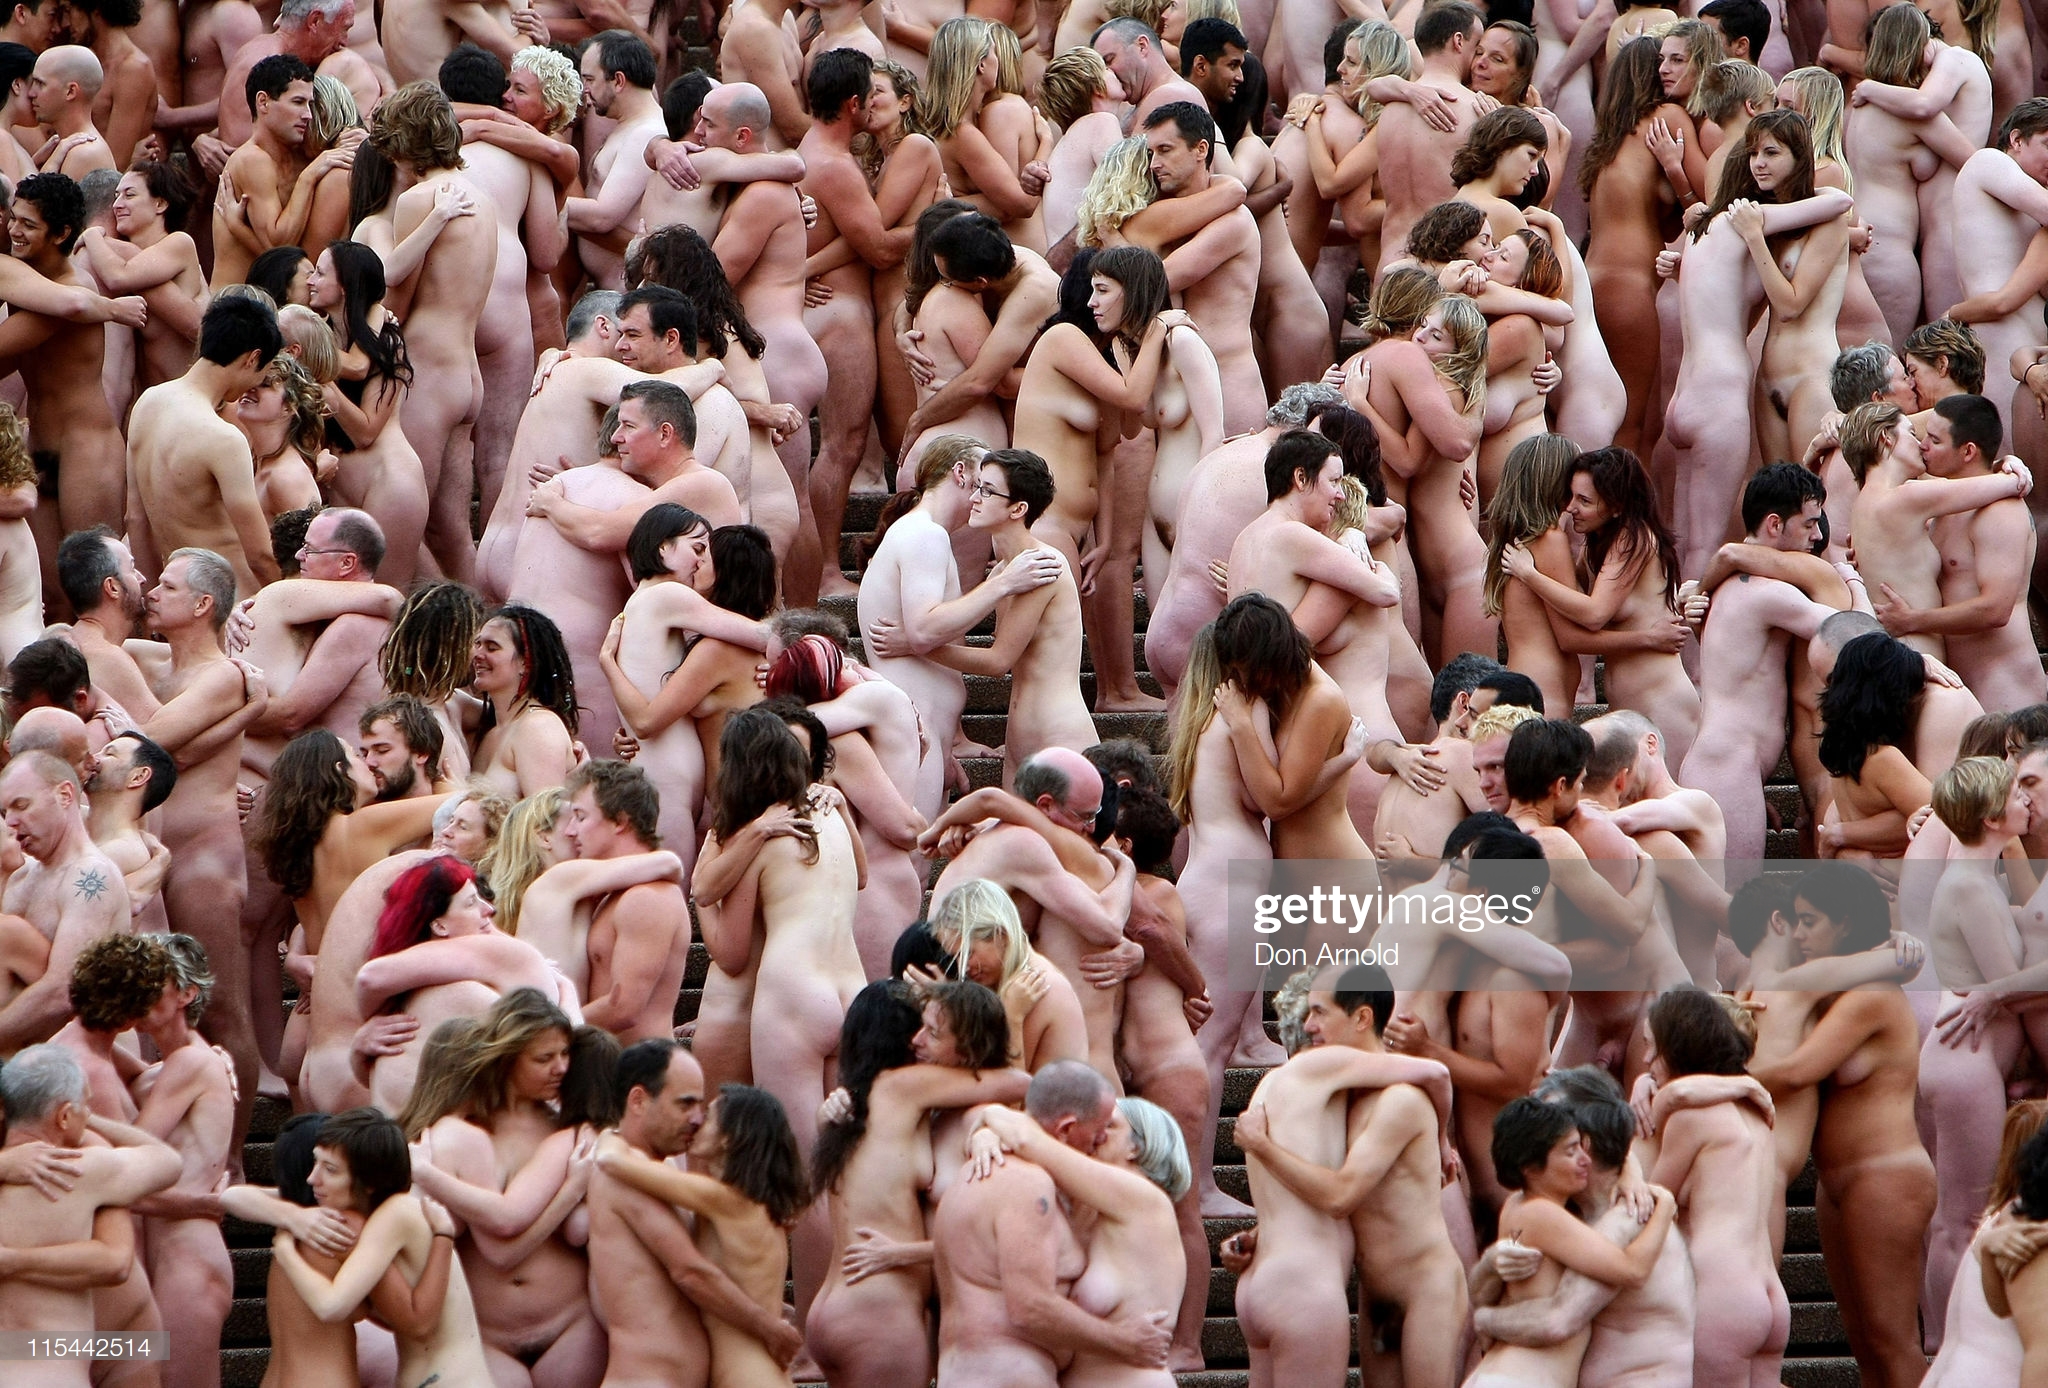 планета голых людей (119) фото